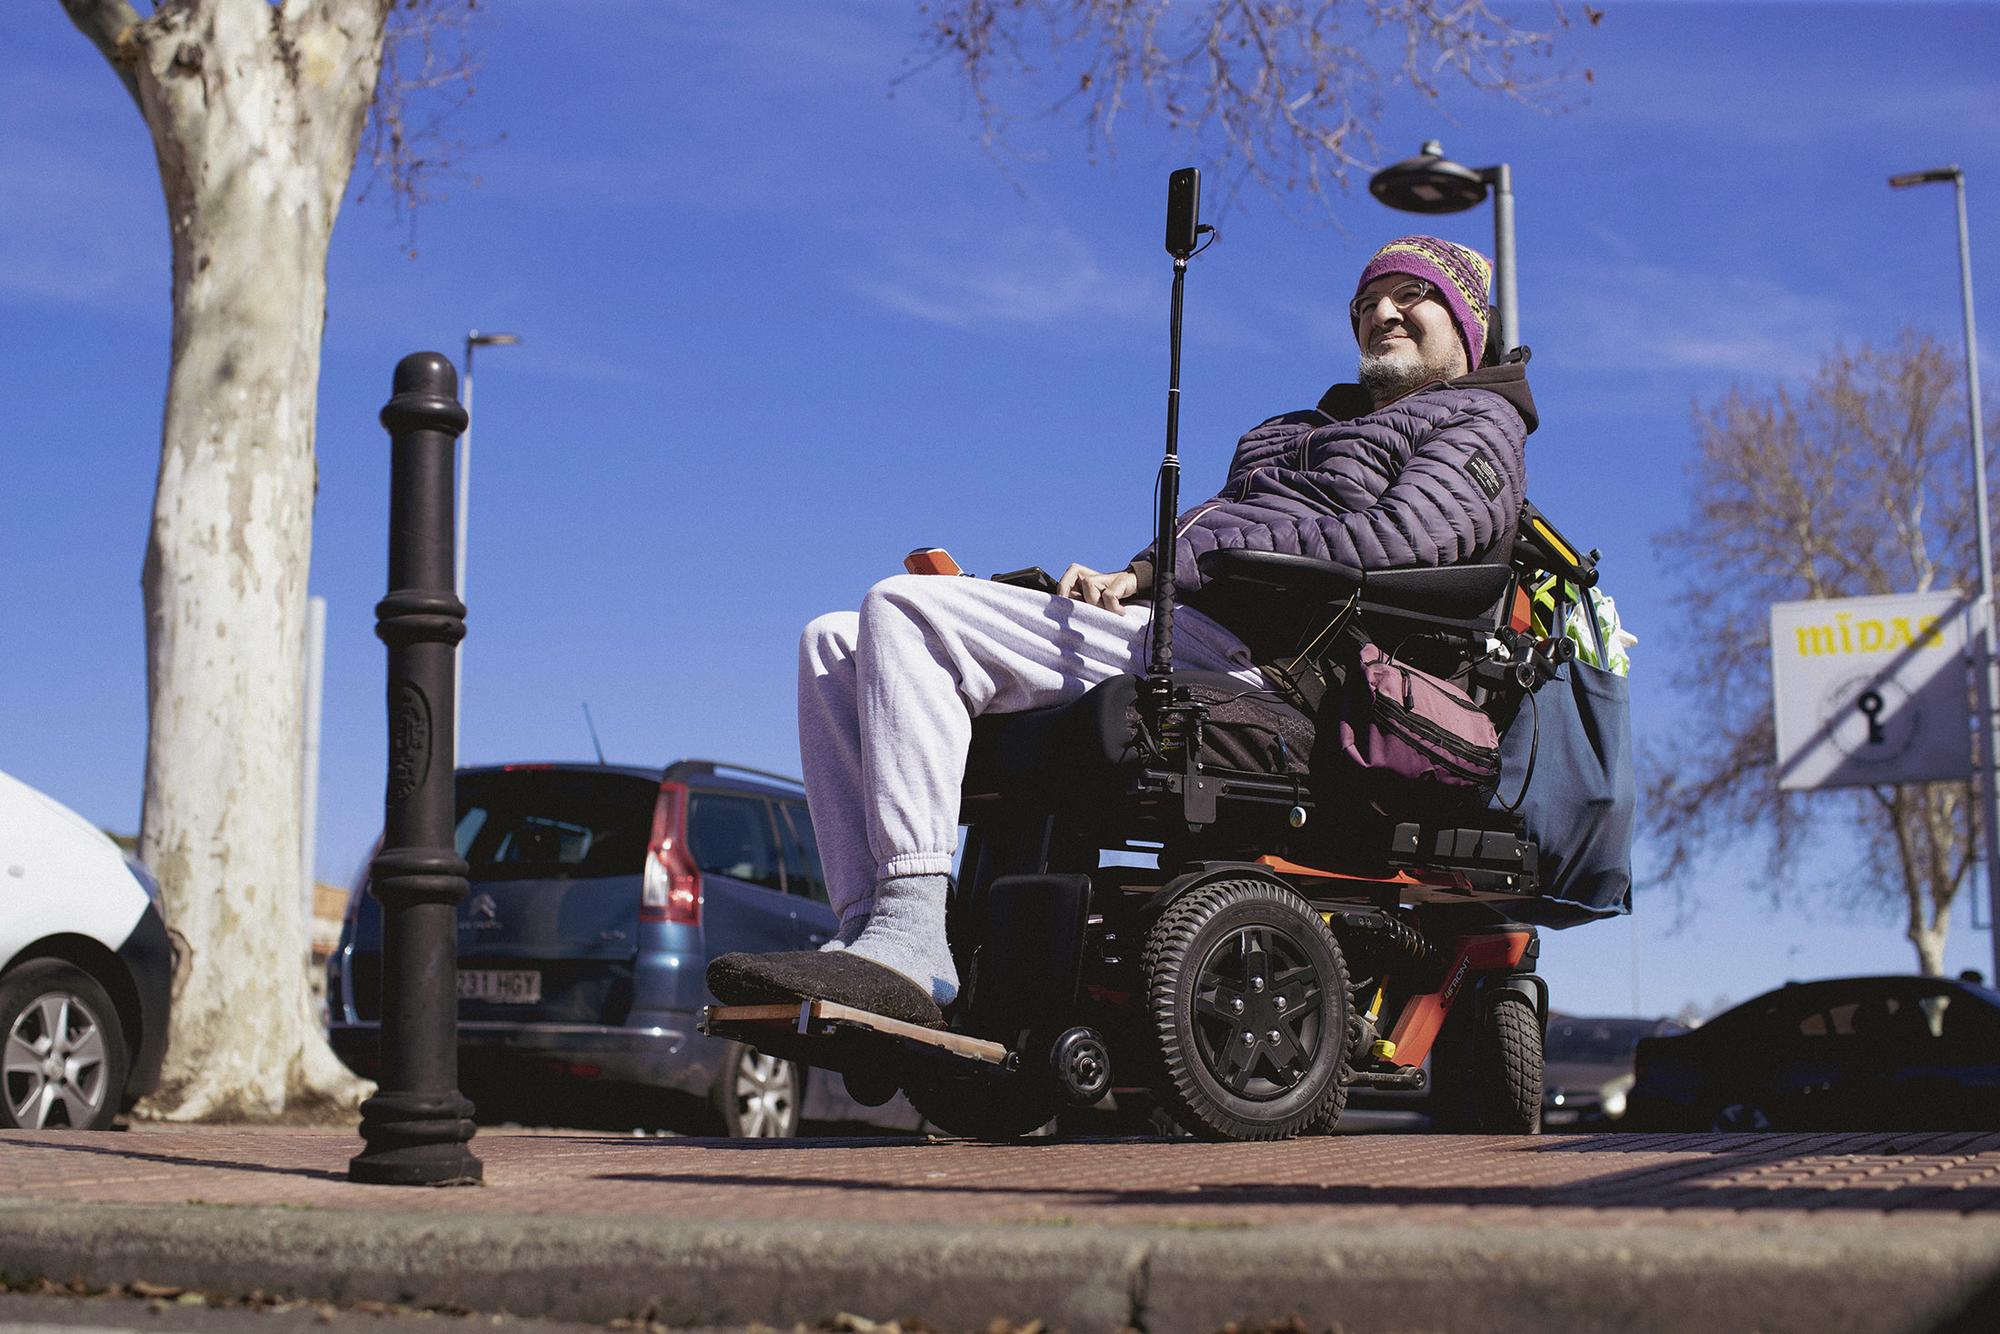 Los obstáculos urbanos son una molestia para quien se mueve en silla de ruedas